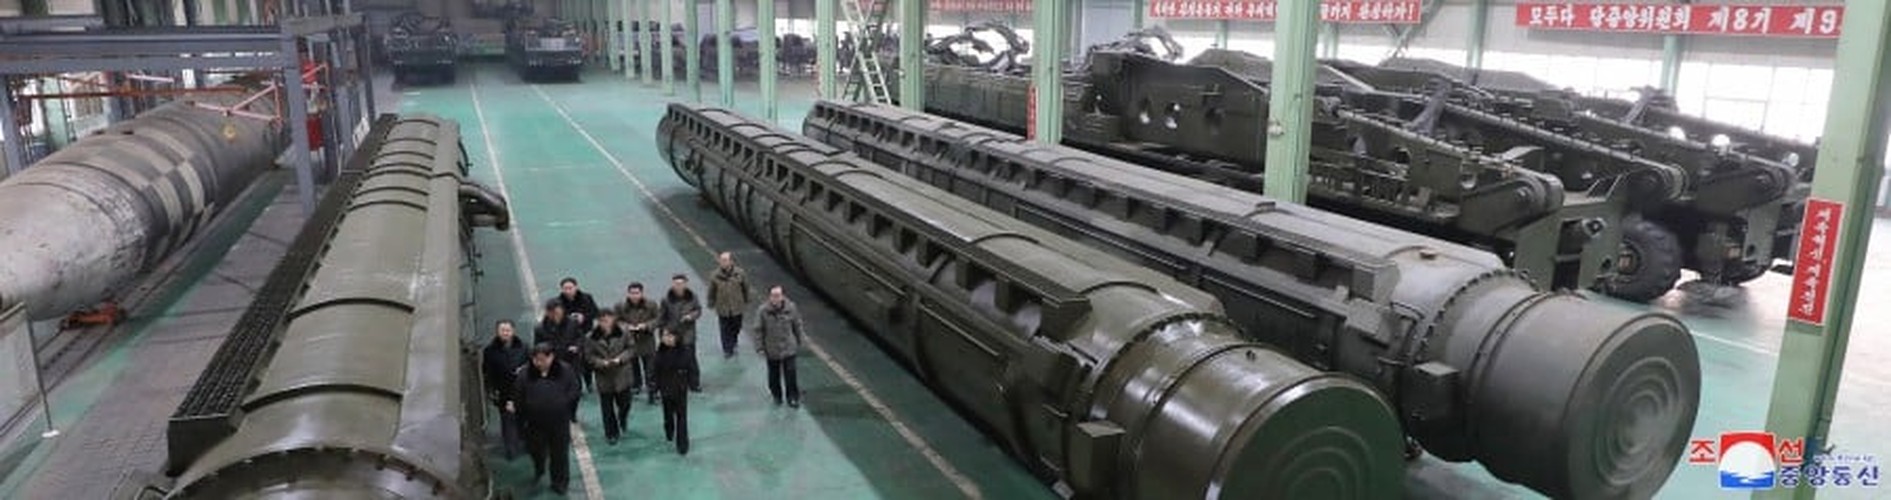 Cận cảnh ông Kim Jong un và con gái thị sát nhà máy sản xuất bệ phóng ICBM- Ảnh 6.